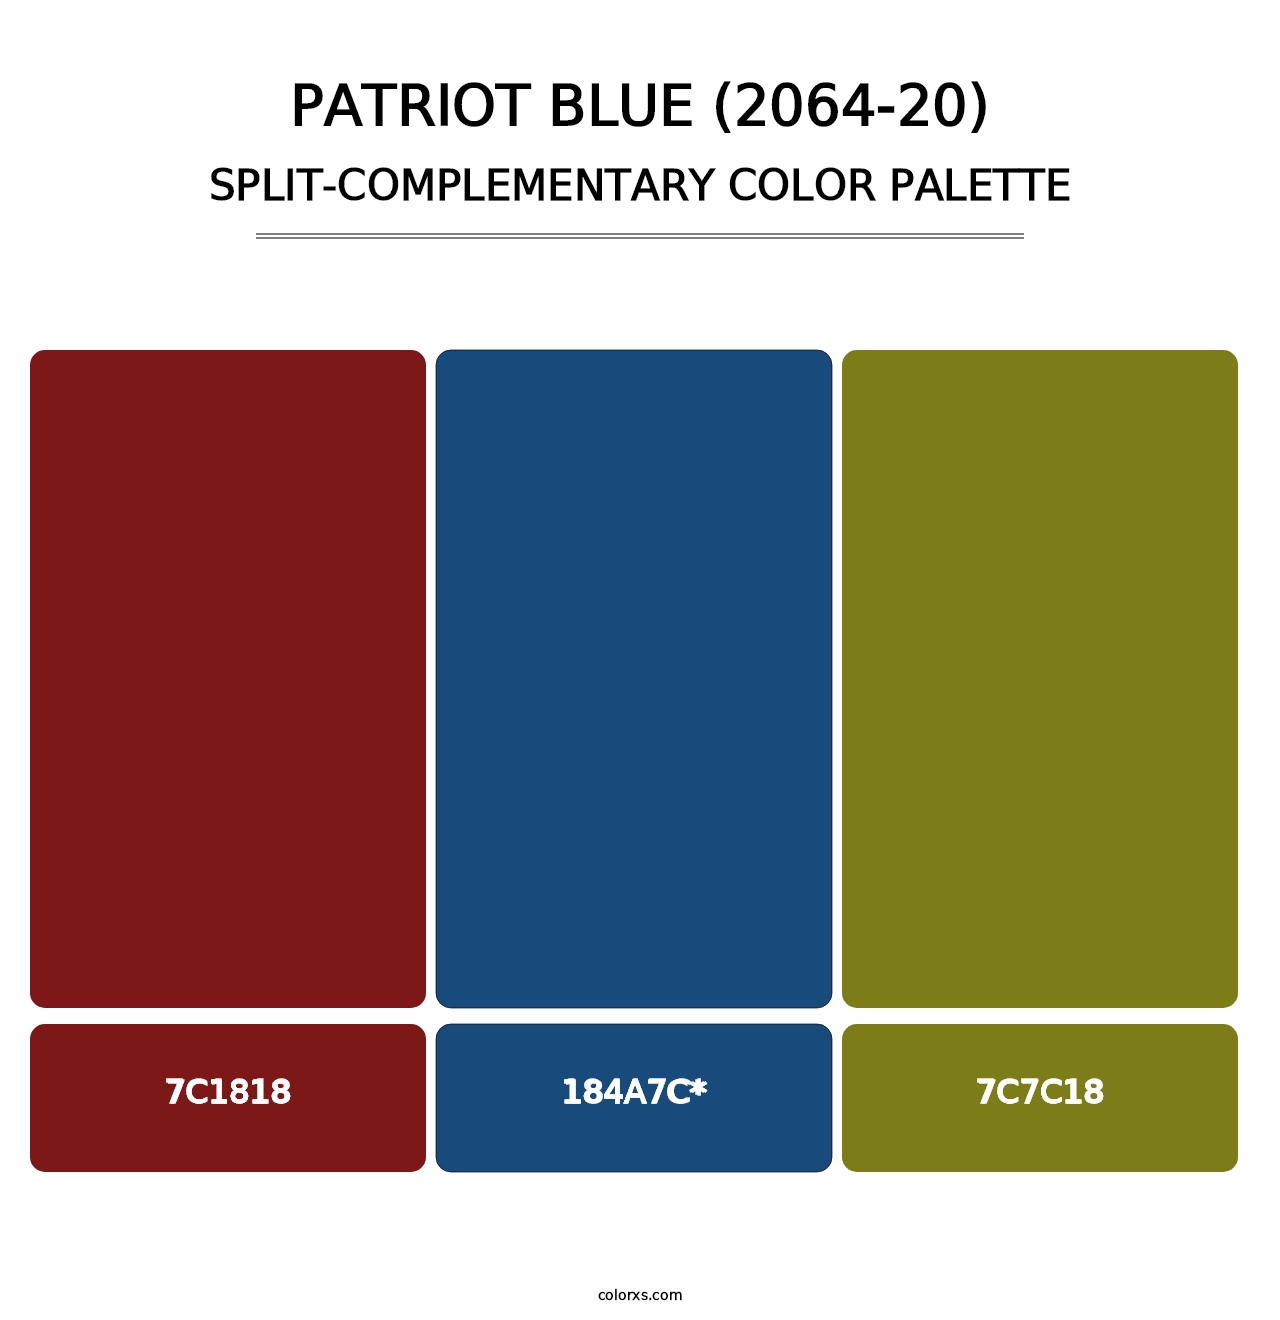 Patriot Blue (2064-20) - Split-Complementary Color Palette